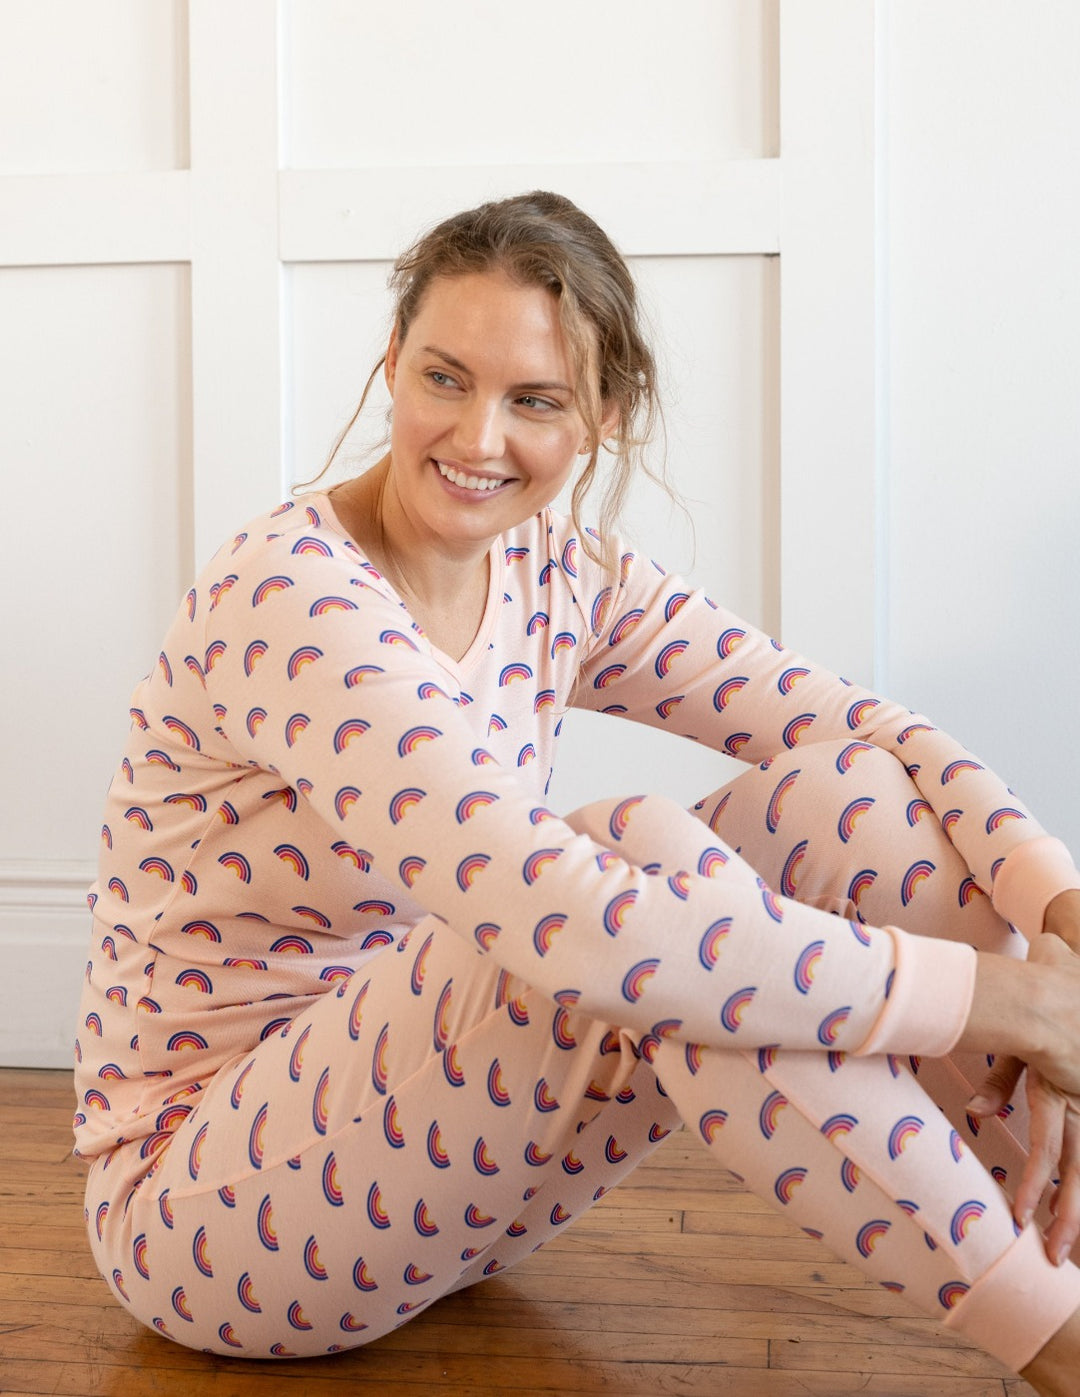 Women's Rainbow Unicorn Pajamas – Leveret Clothing